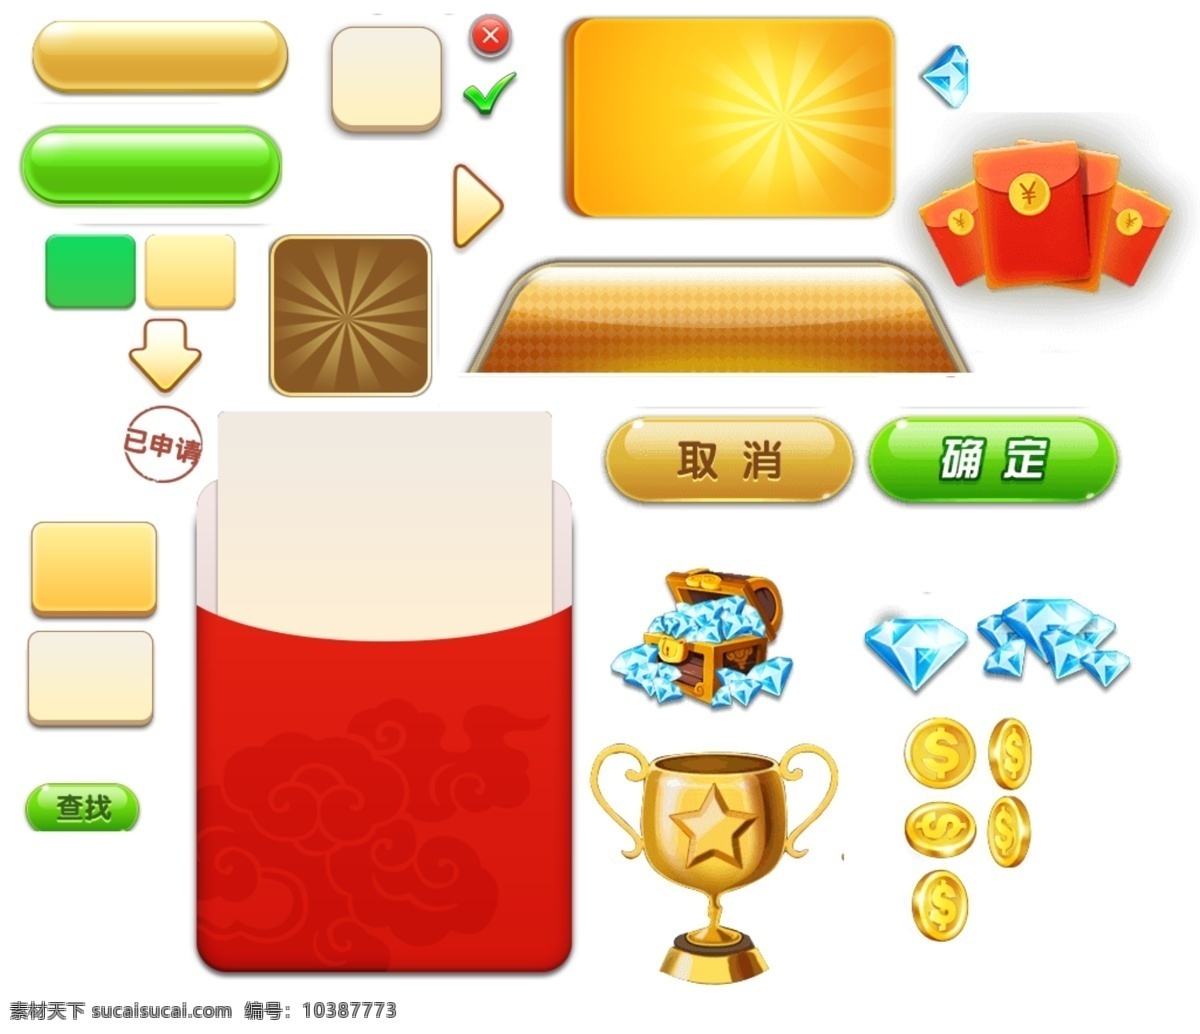 游戏图标 游戏按钮 游戏背景 游戏红包 游戏奖杯 游戏金币 底纹边框 其他素材